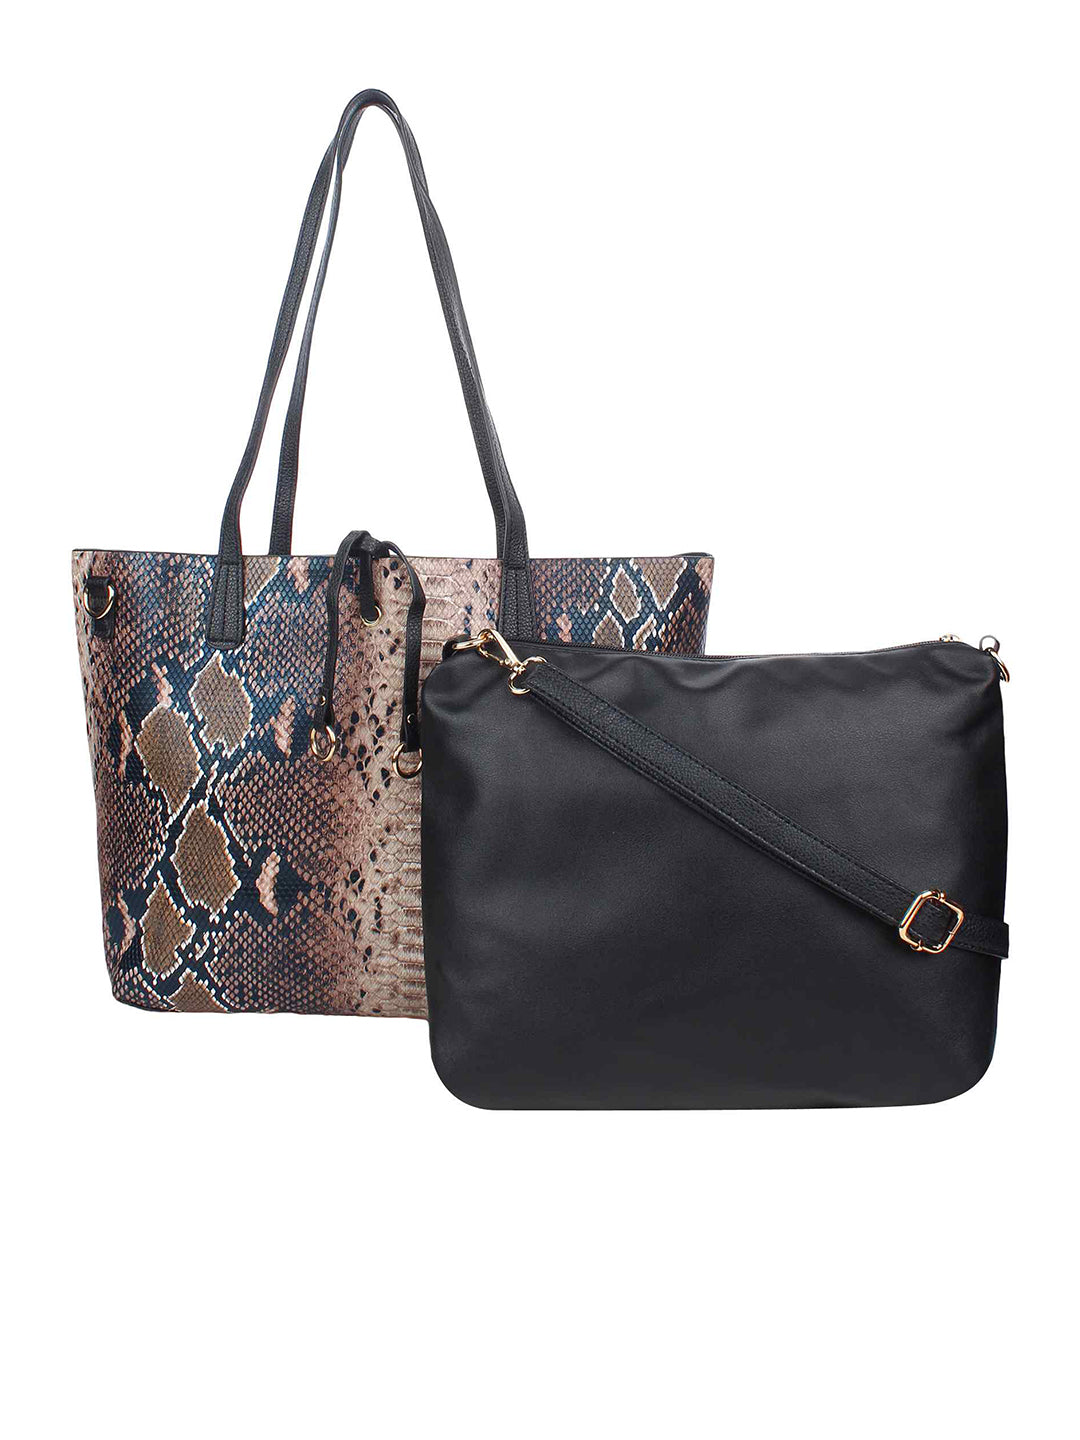 Women Handbags, Handbags, Brown Tote Bag